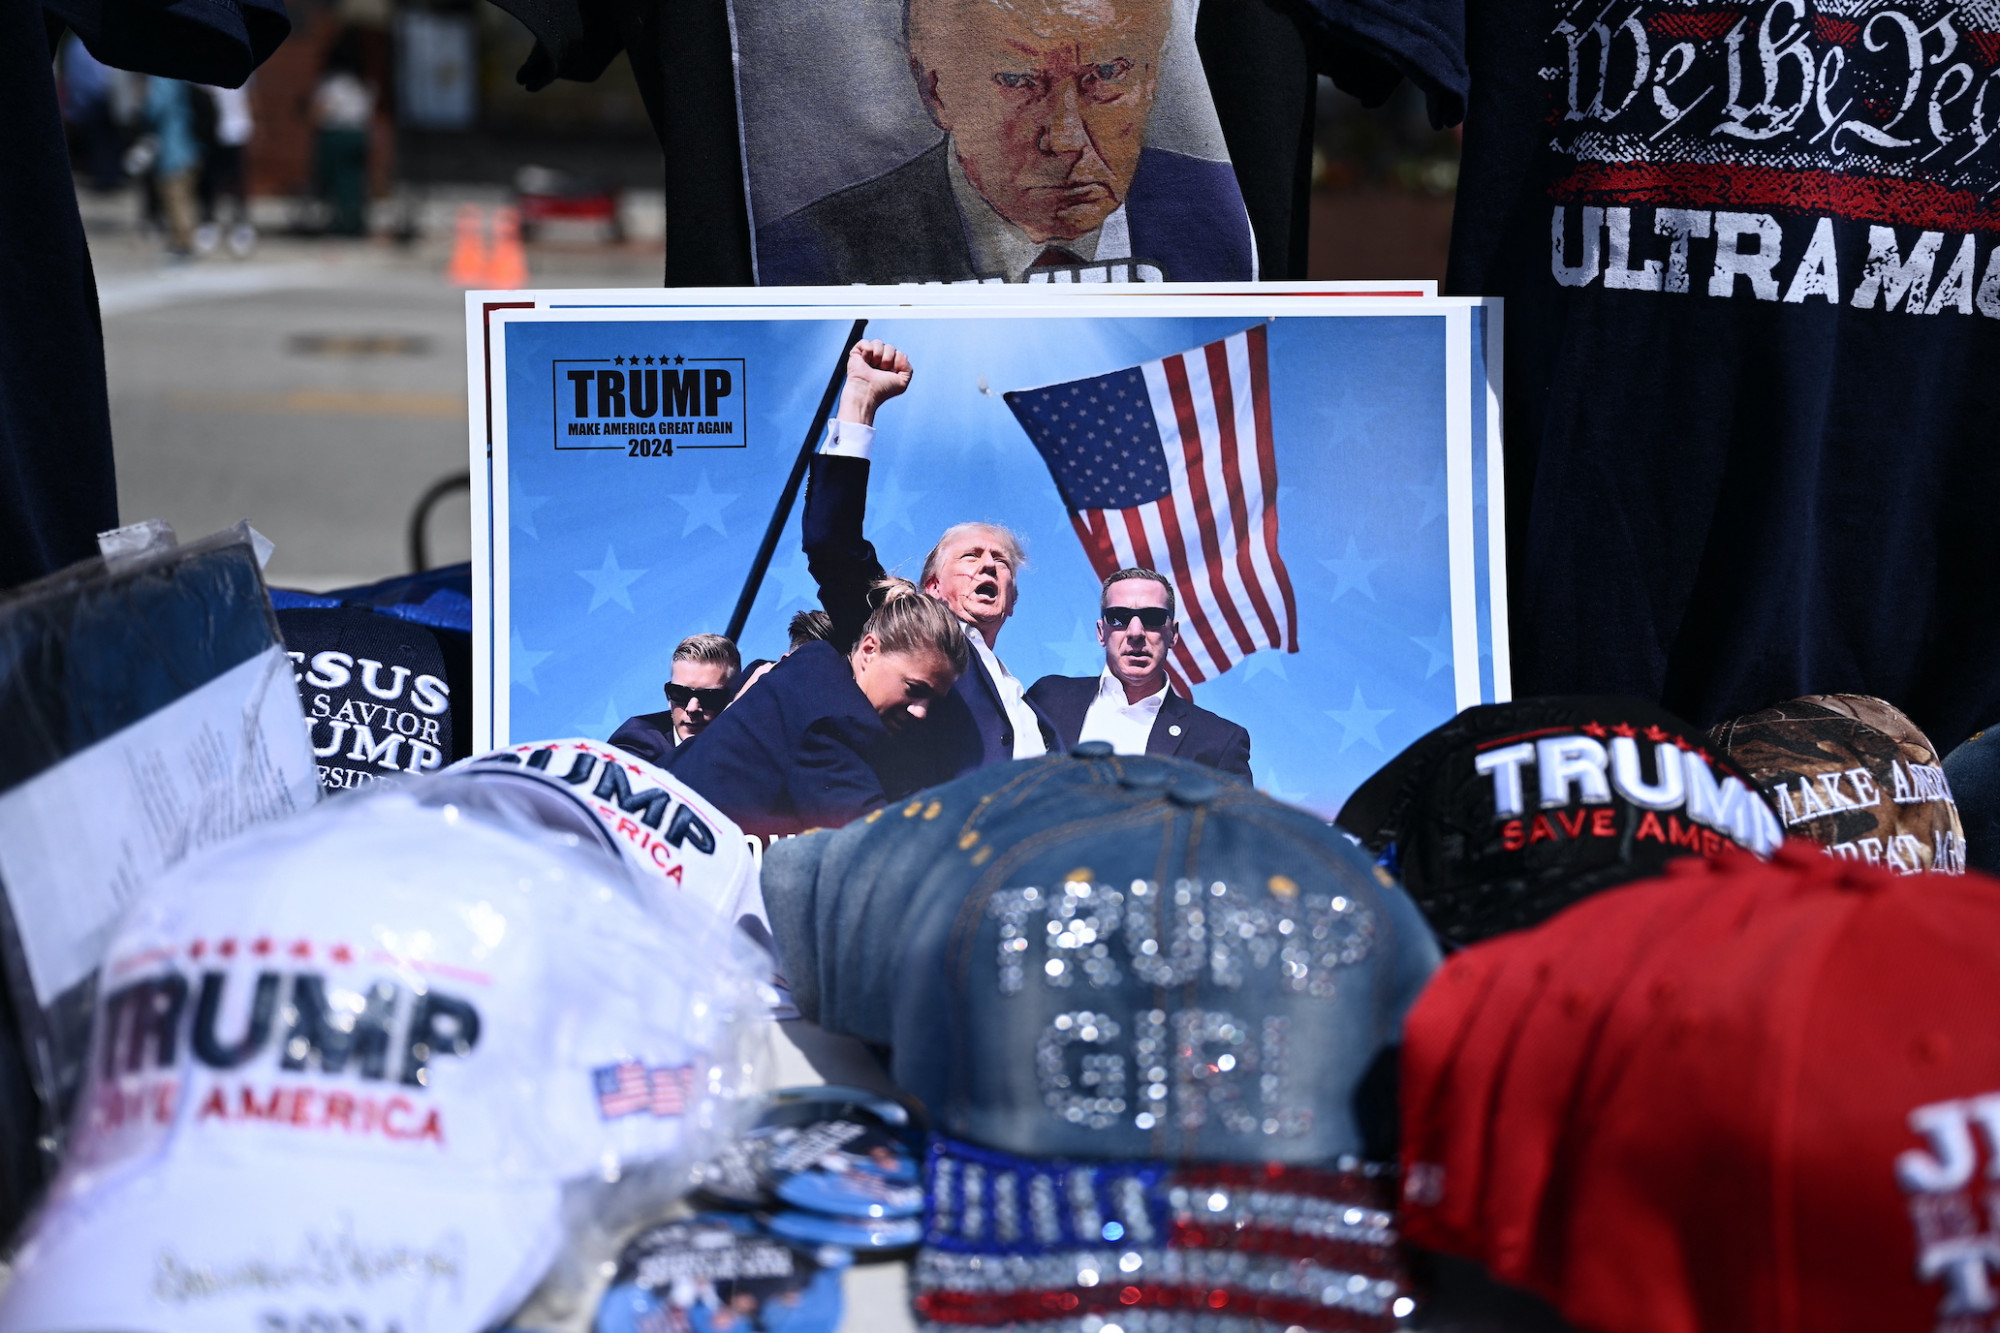 Vér, ököl és nemzeti lobogó – az ikonikus Trump-fotó egyszerre művészet és tökéletes kampányfogás